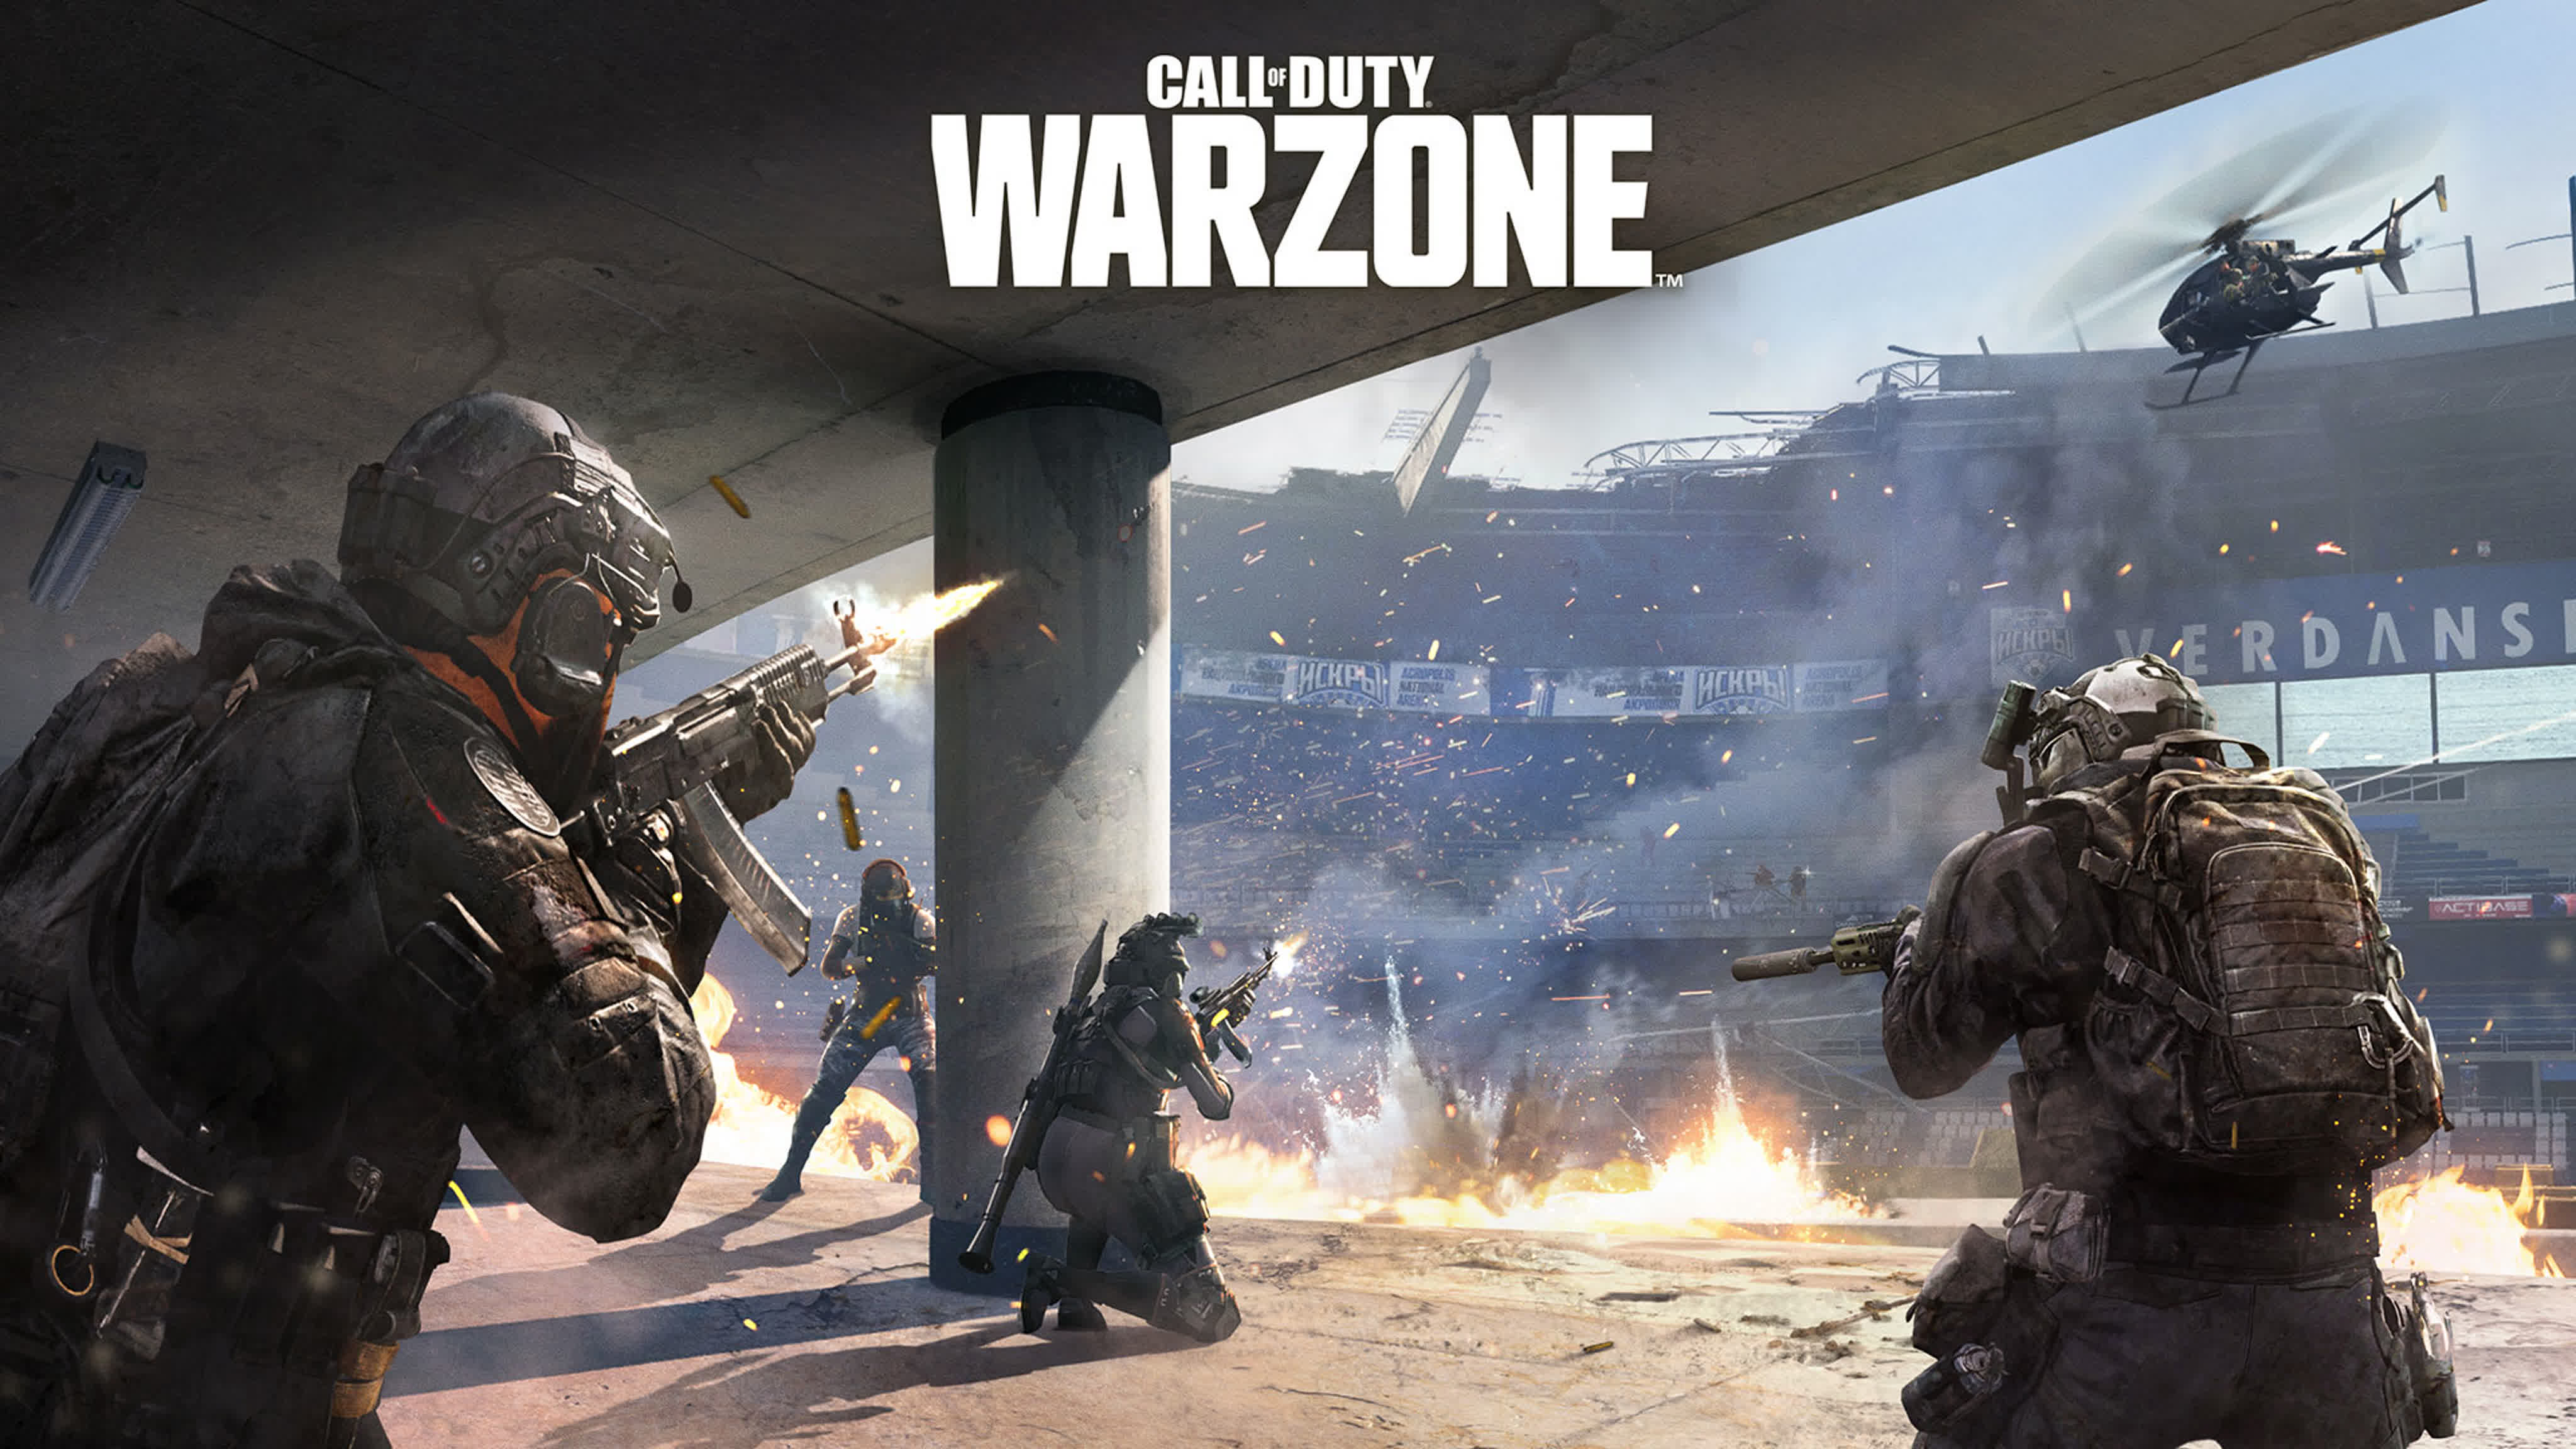 Call of duty warzone play. Call of Duty Warzone. Варзоне Call of Duty. Варзон 2 Call of Duty. Call of Duty 4 Modern Warfare Warzone.